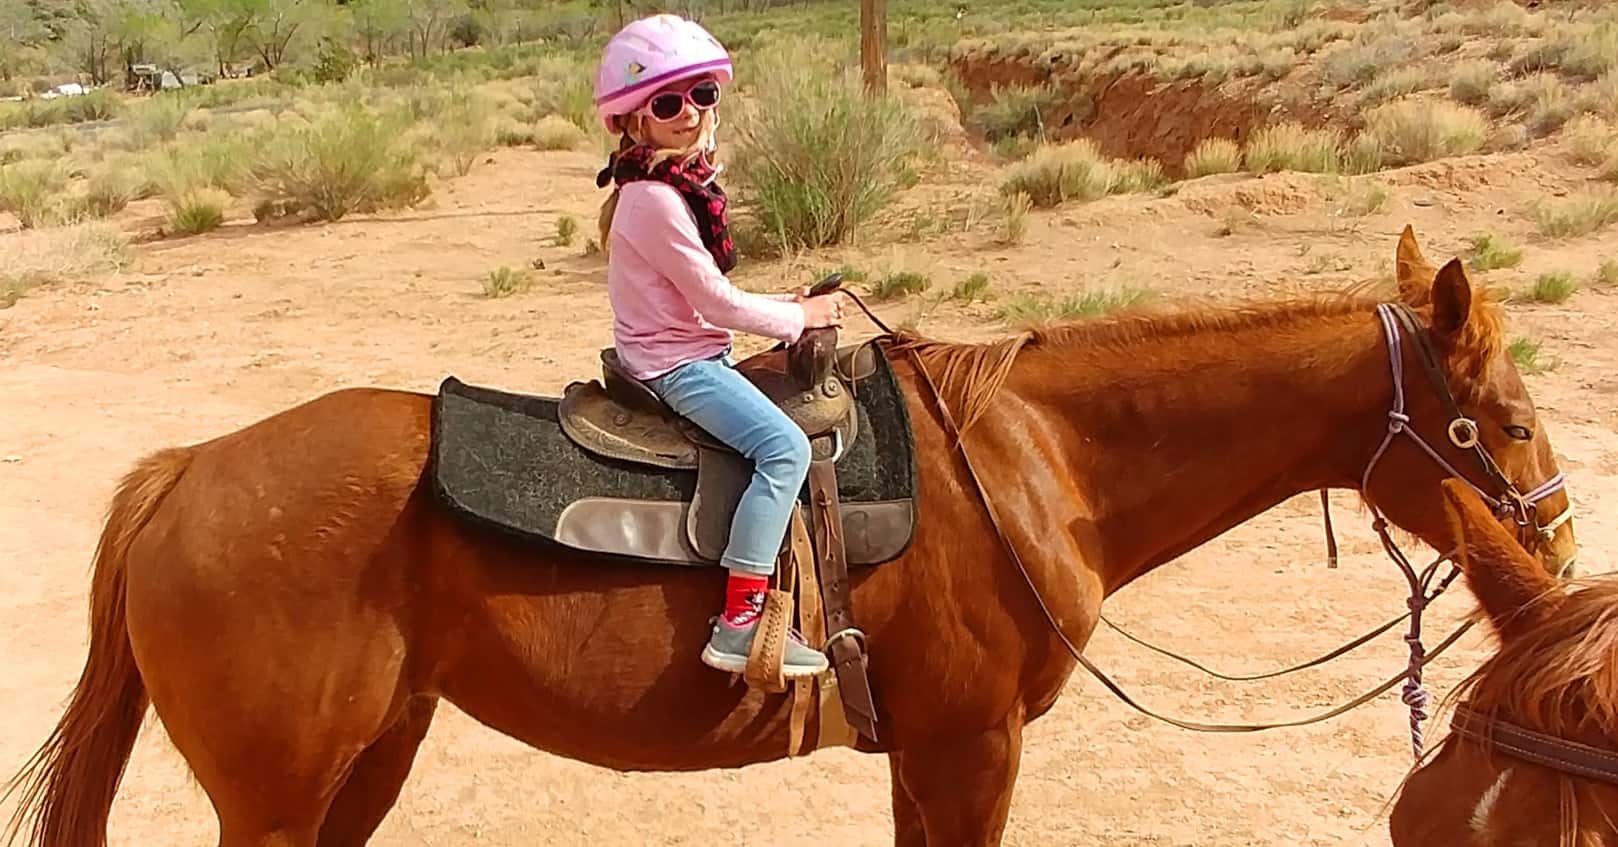 Taking children horseback riding